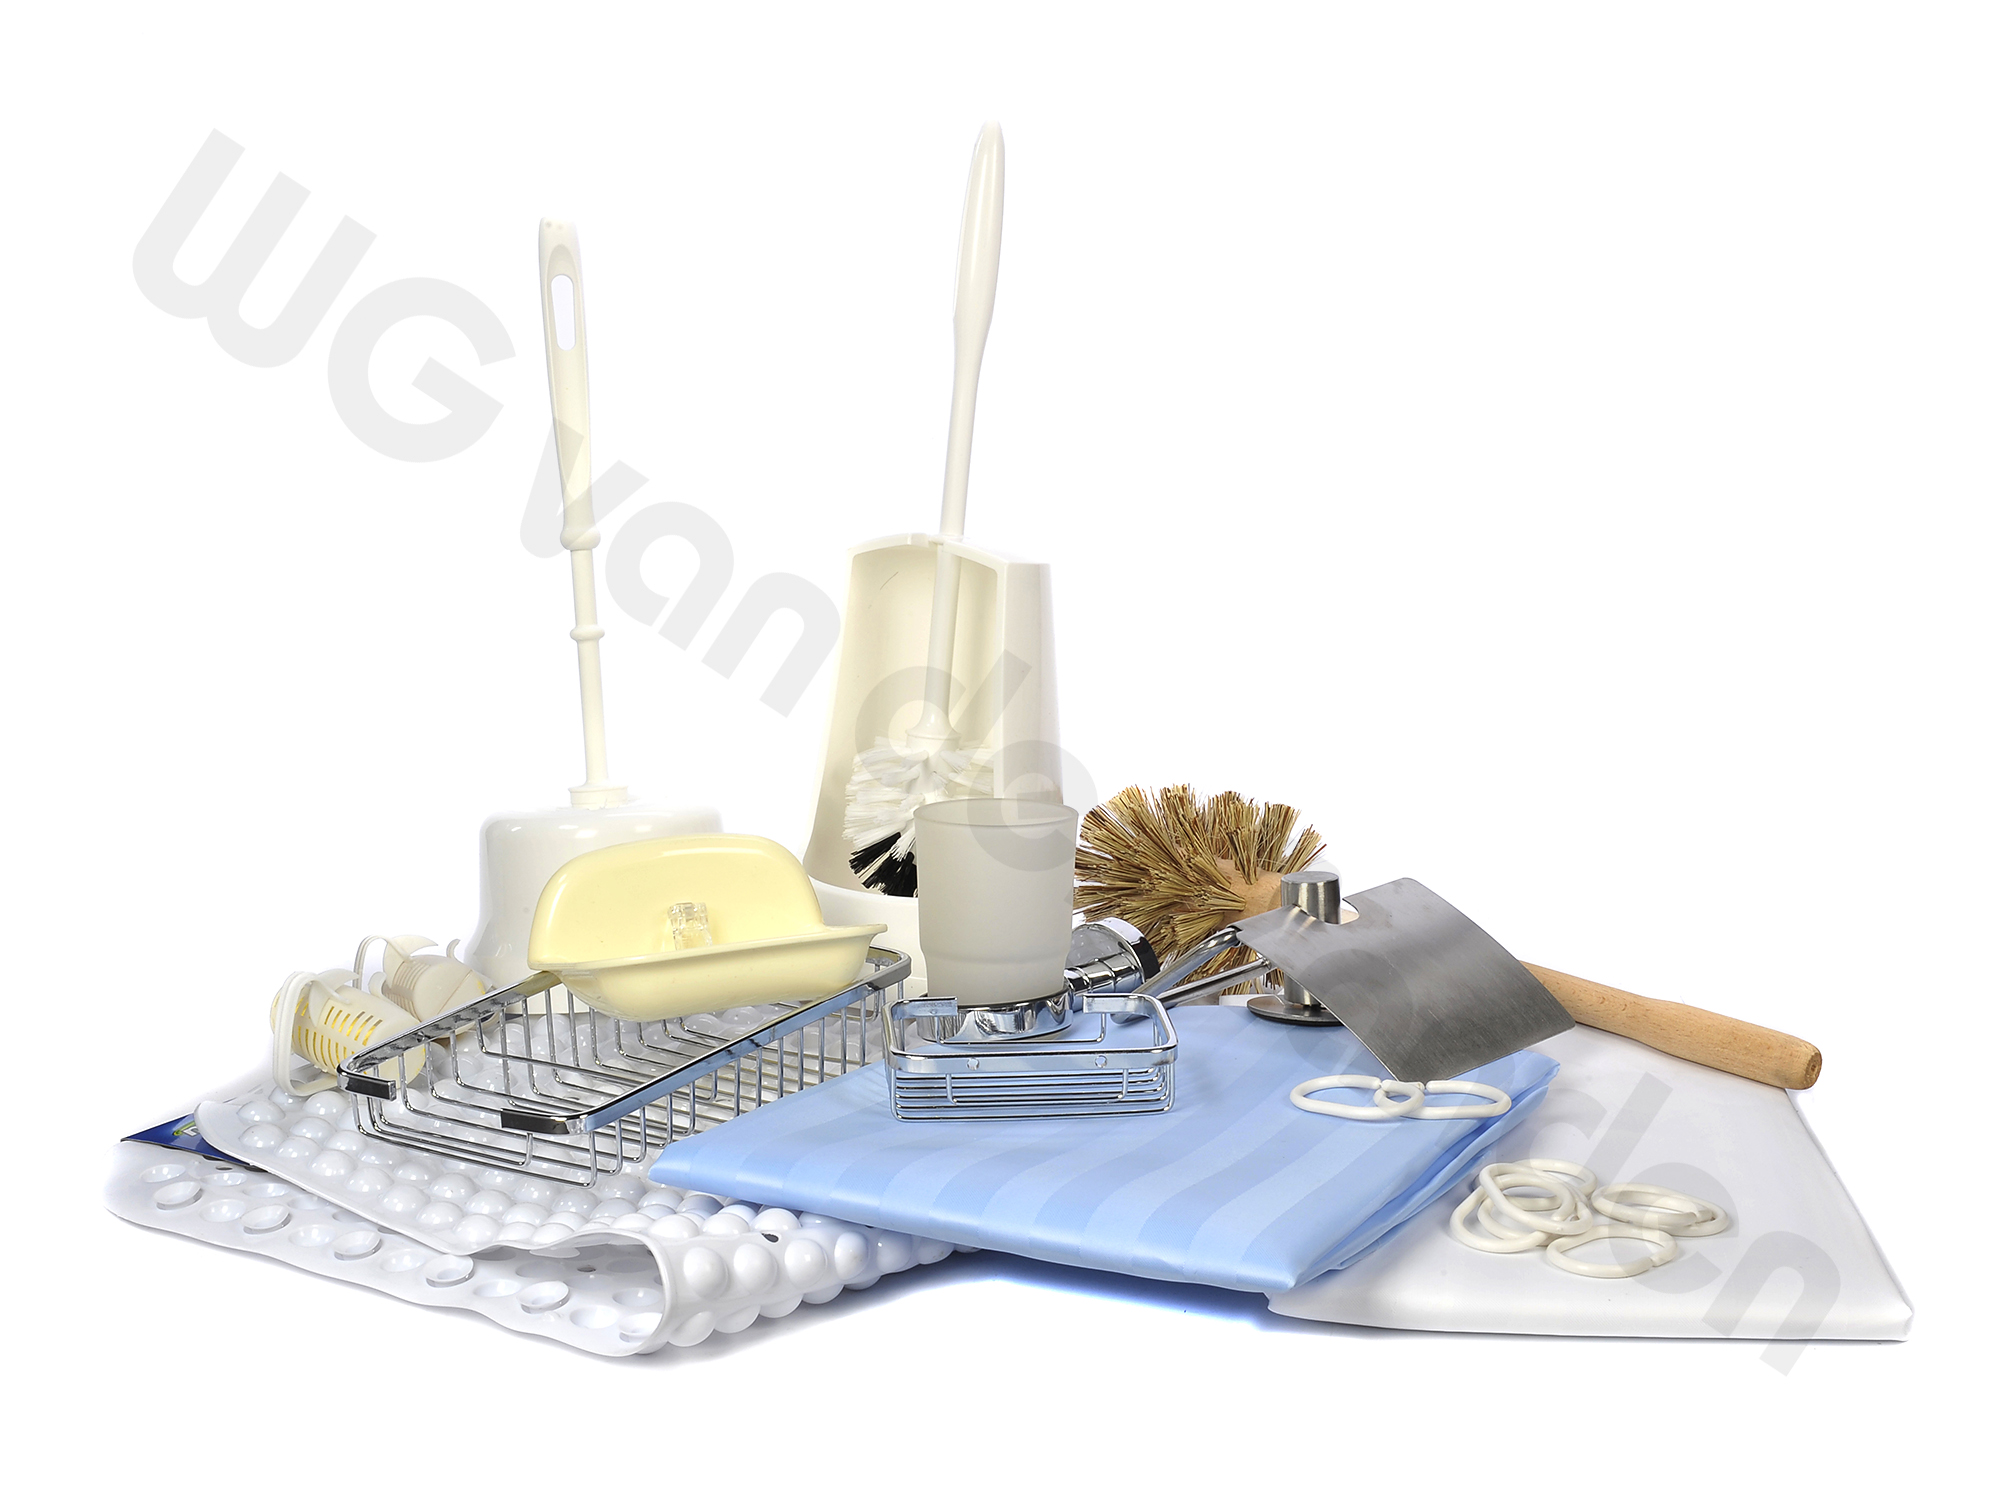 Sanitary items